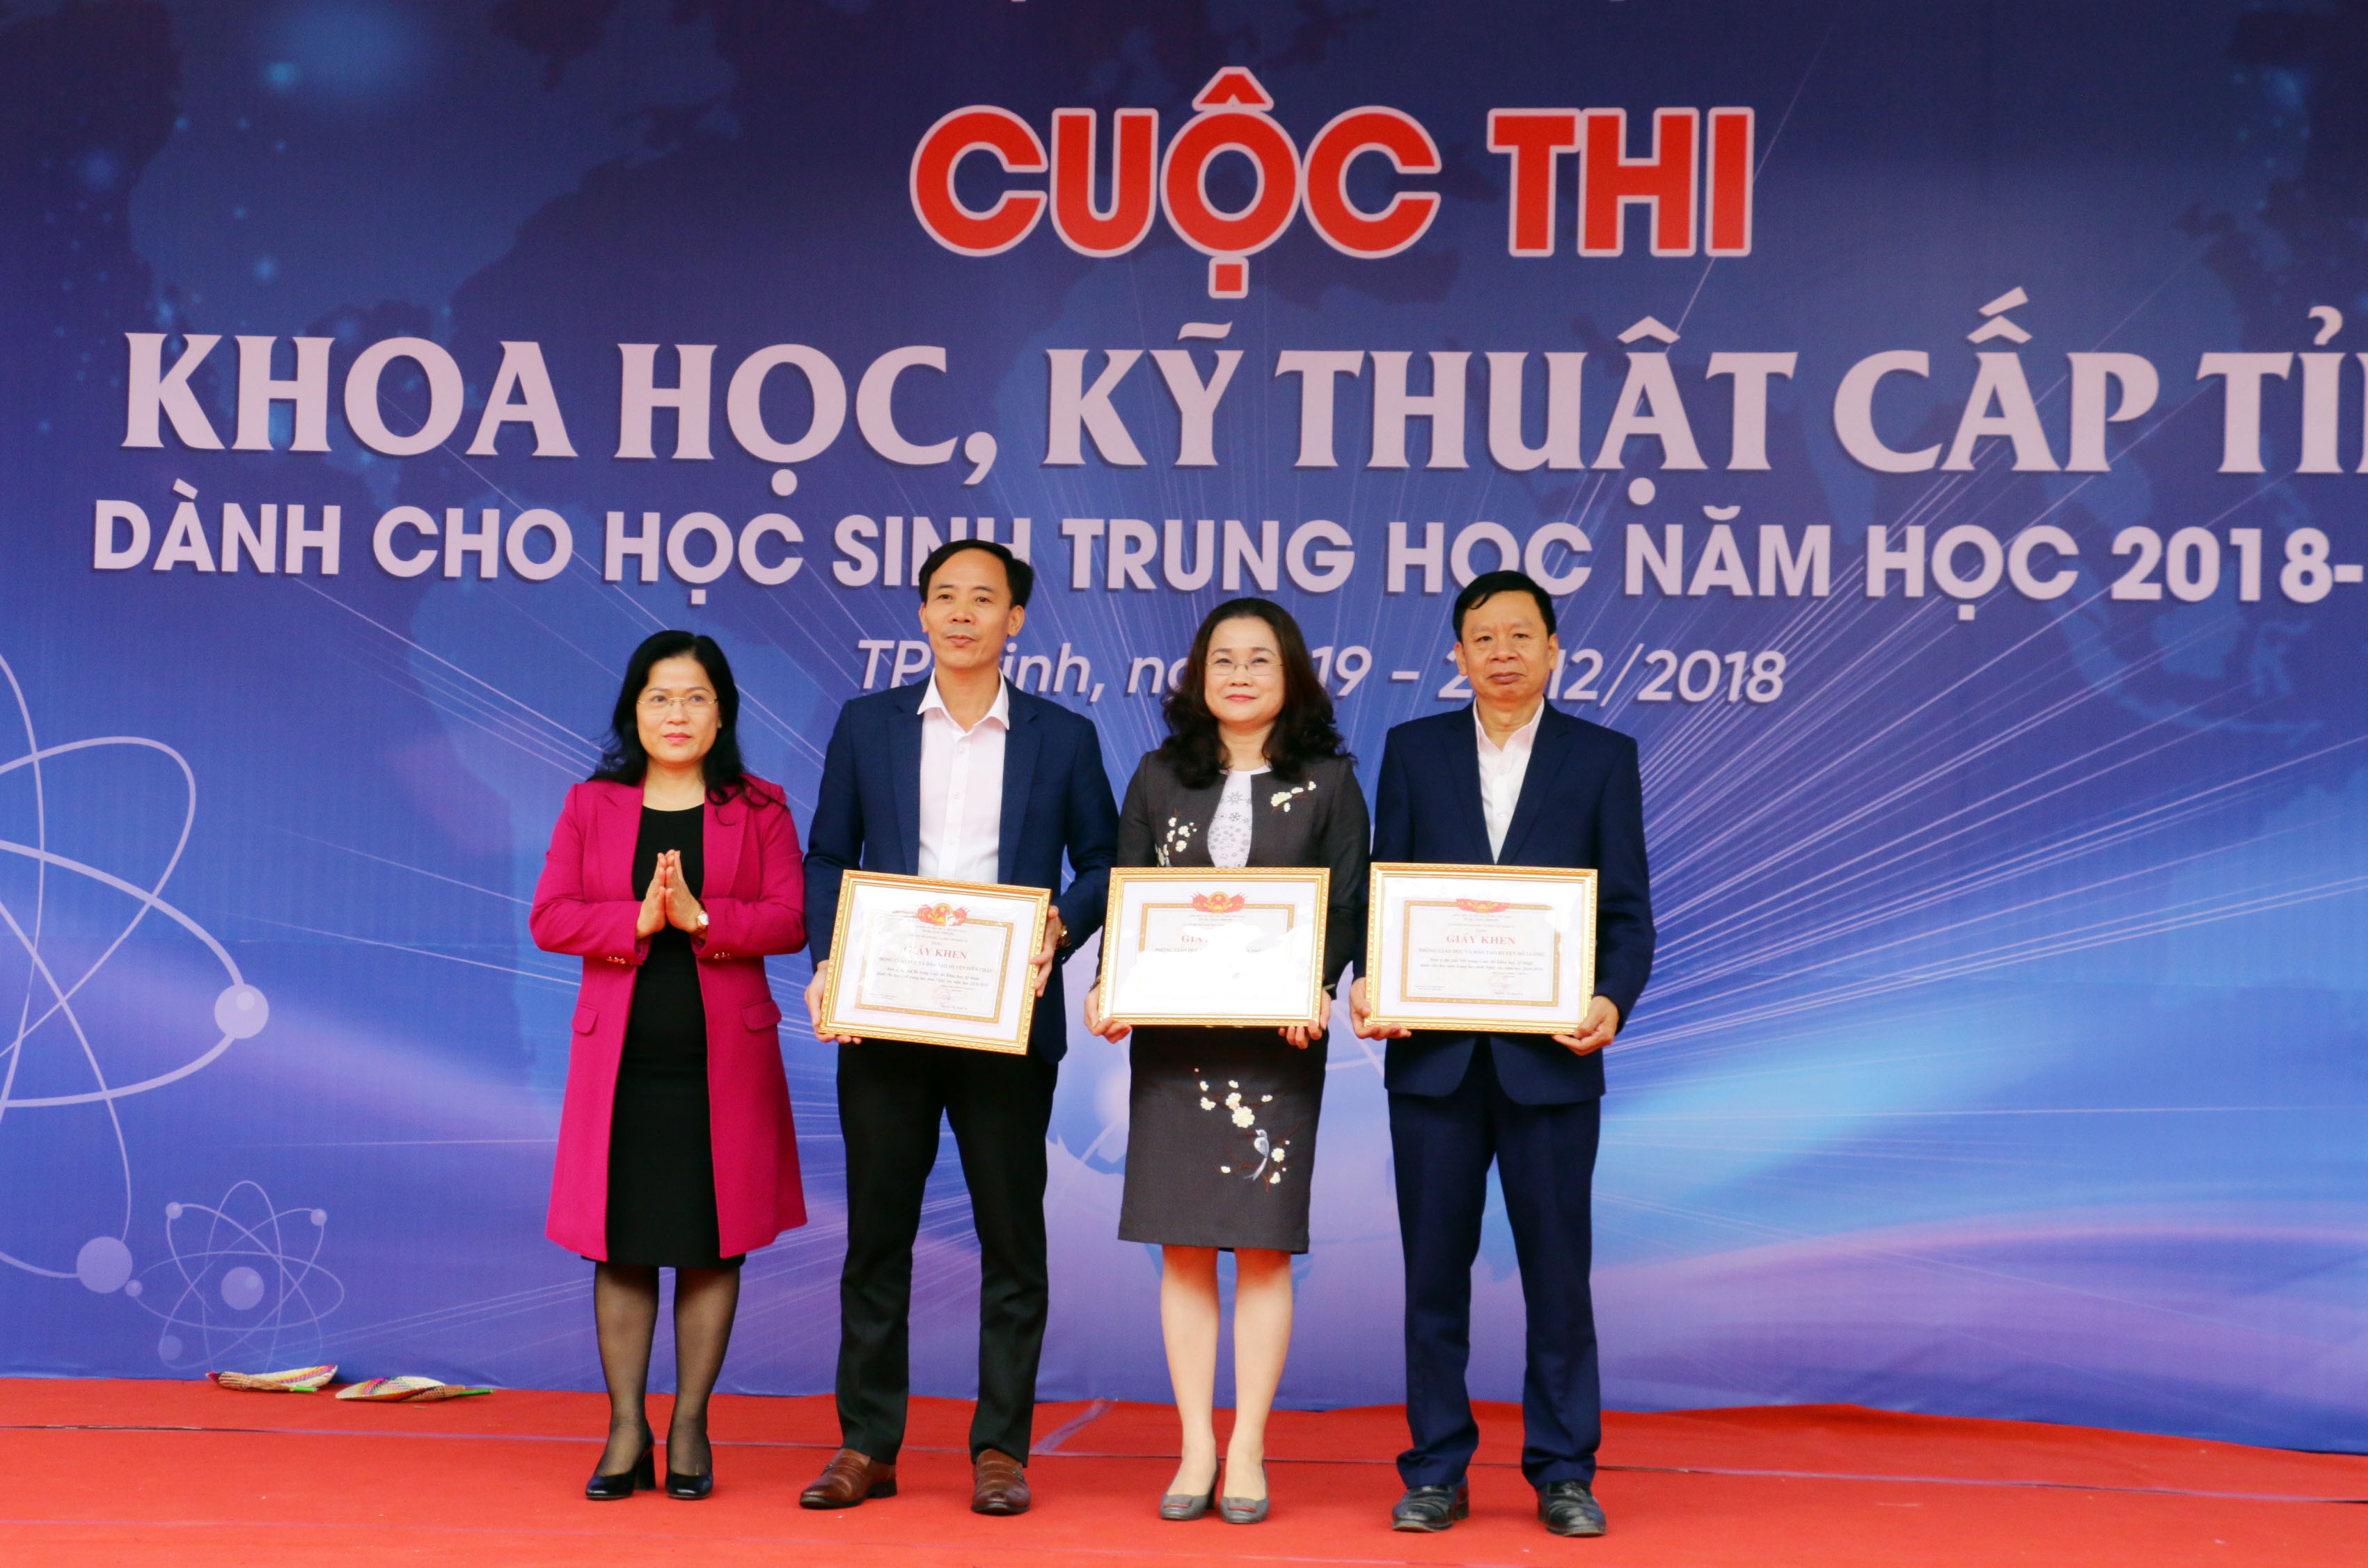 Đồng chí Nguyễn Thị Kim Chi - Giám đốc Sở Giáo dục và Đào tạo trao giải tập thể cho các Phòng Giáo dục và Đào tạo. Ảnh: Mỹ Hà